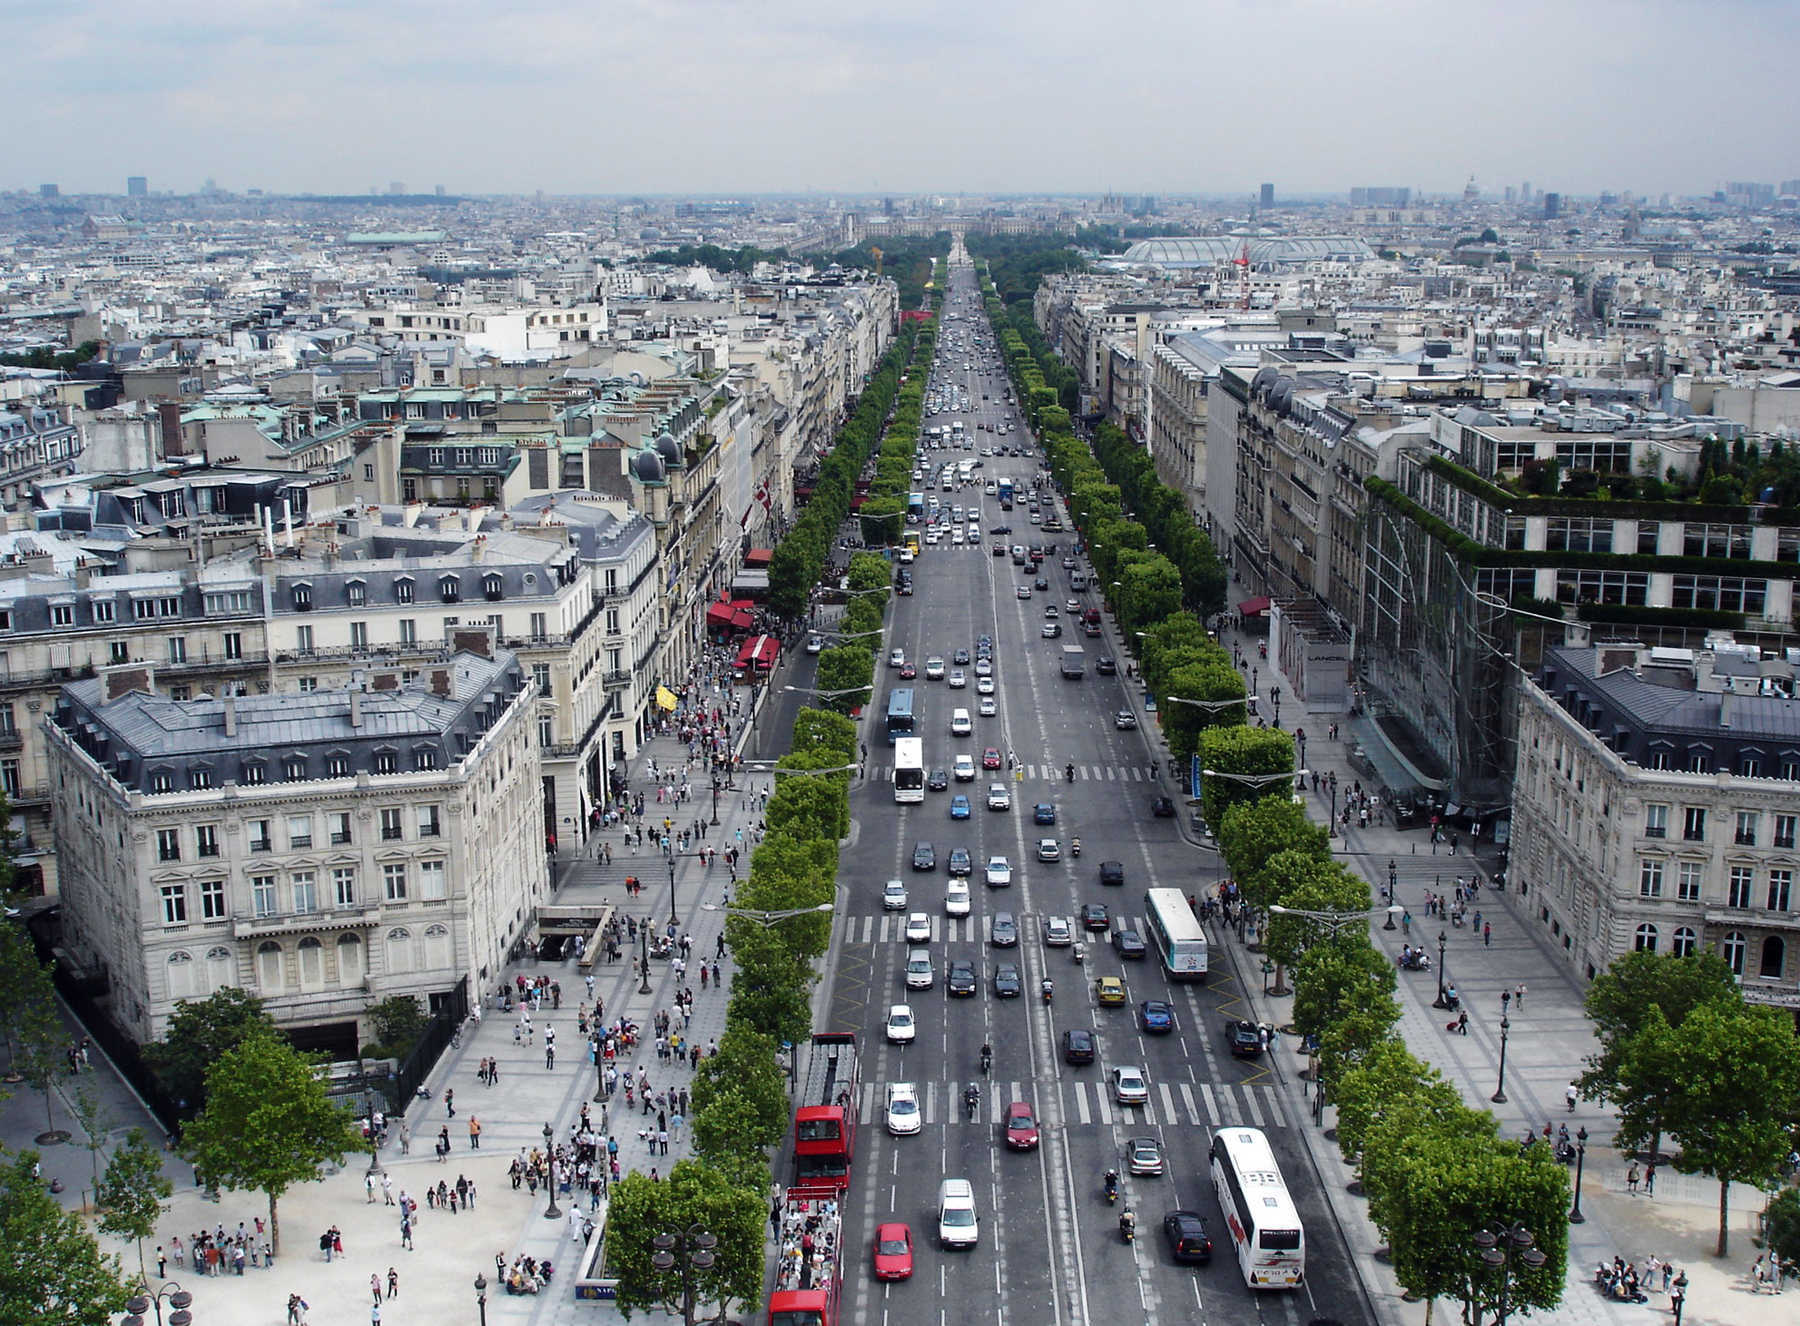 Visiting the Champs-Élysées